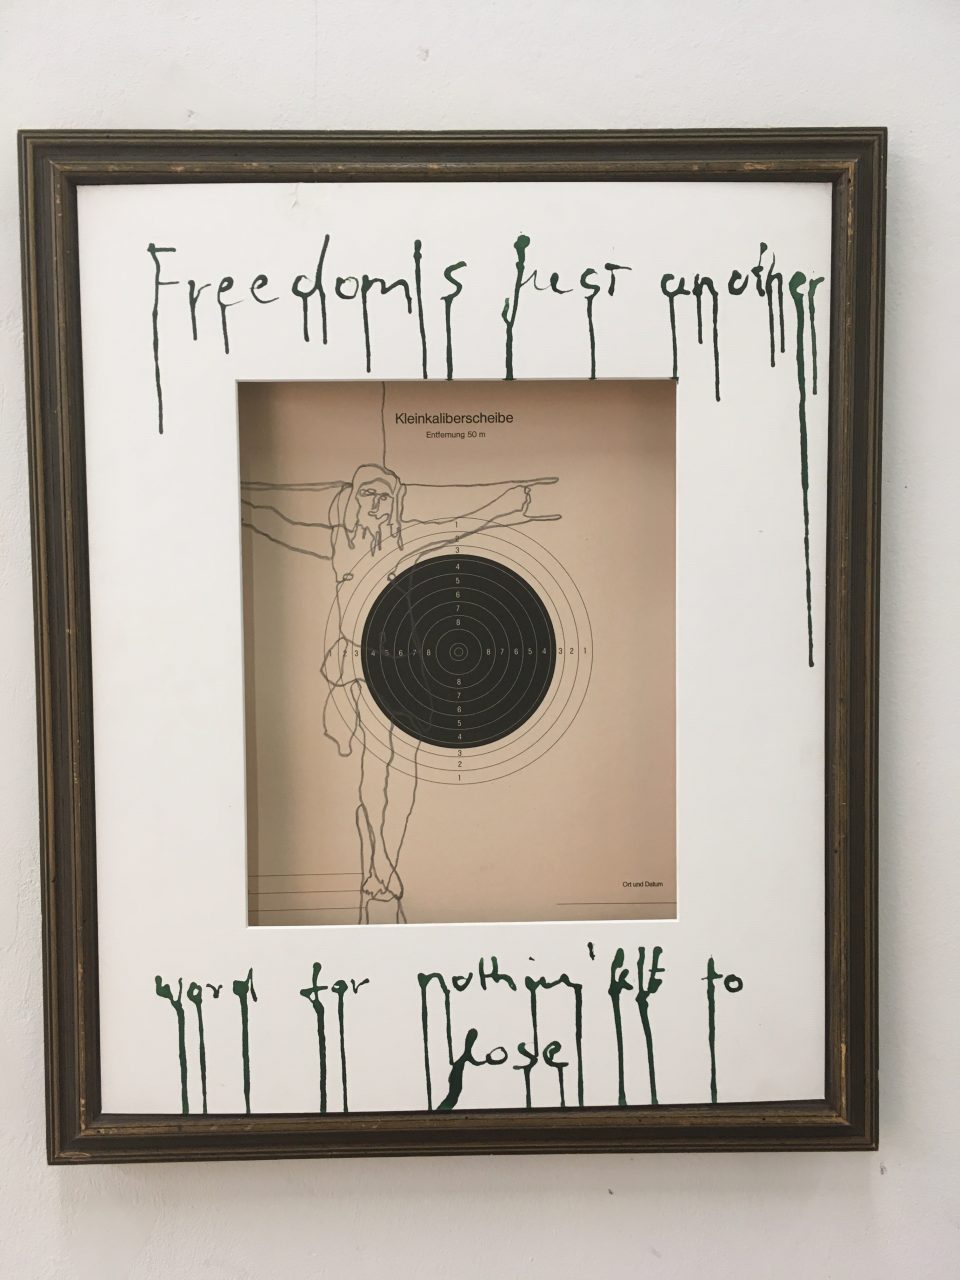 Zeichnung auf Kleinkaliberscheibe, gerahmt, beschriftet mit "Freedom is just another word for nothing left to lose"